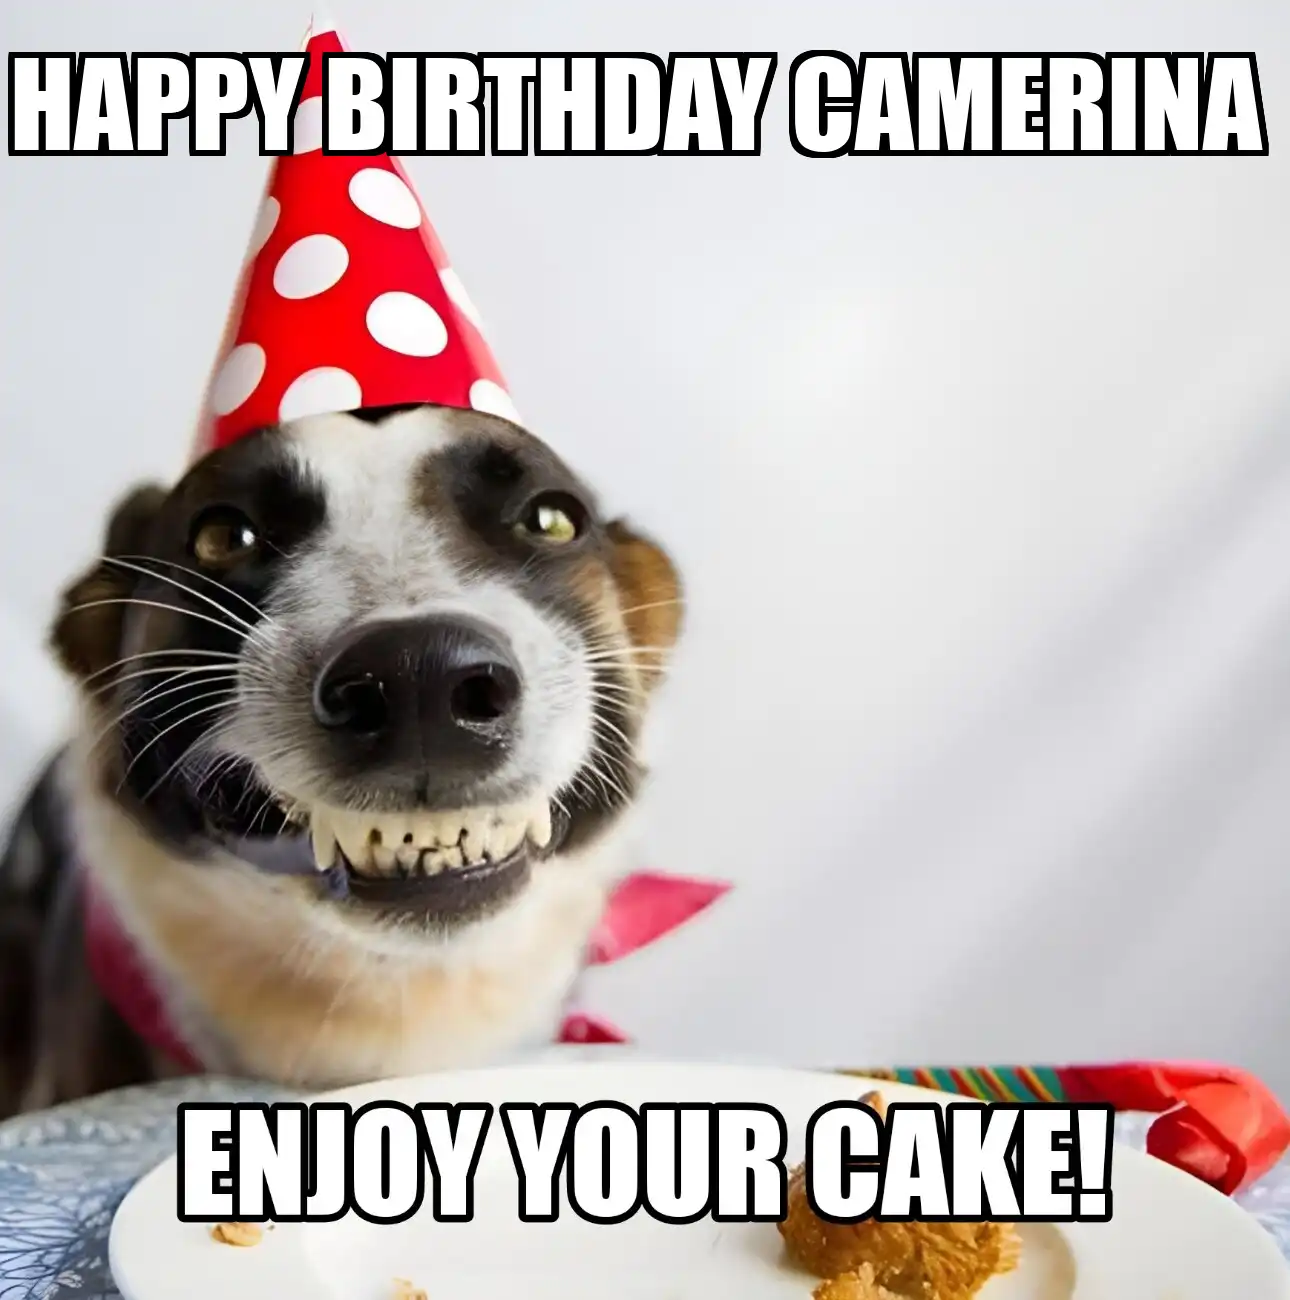 Happy Birthday Camerina Enjoy Your Cake Dog Meme